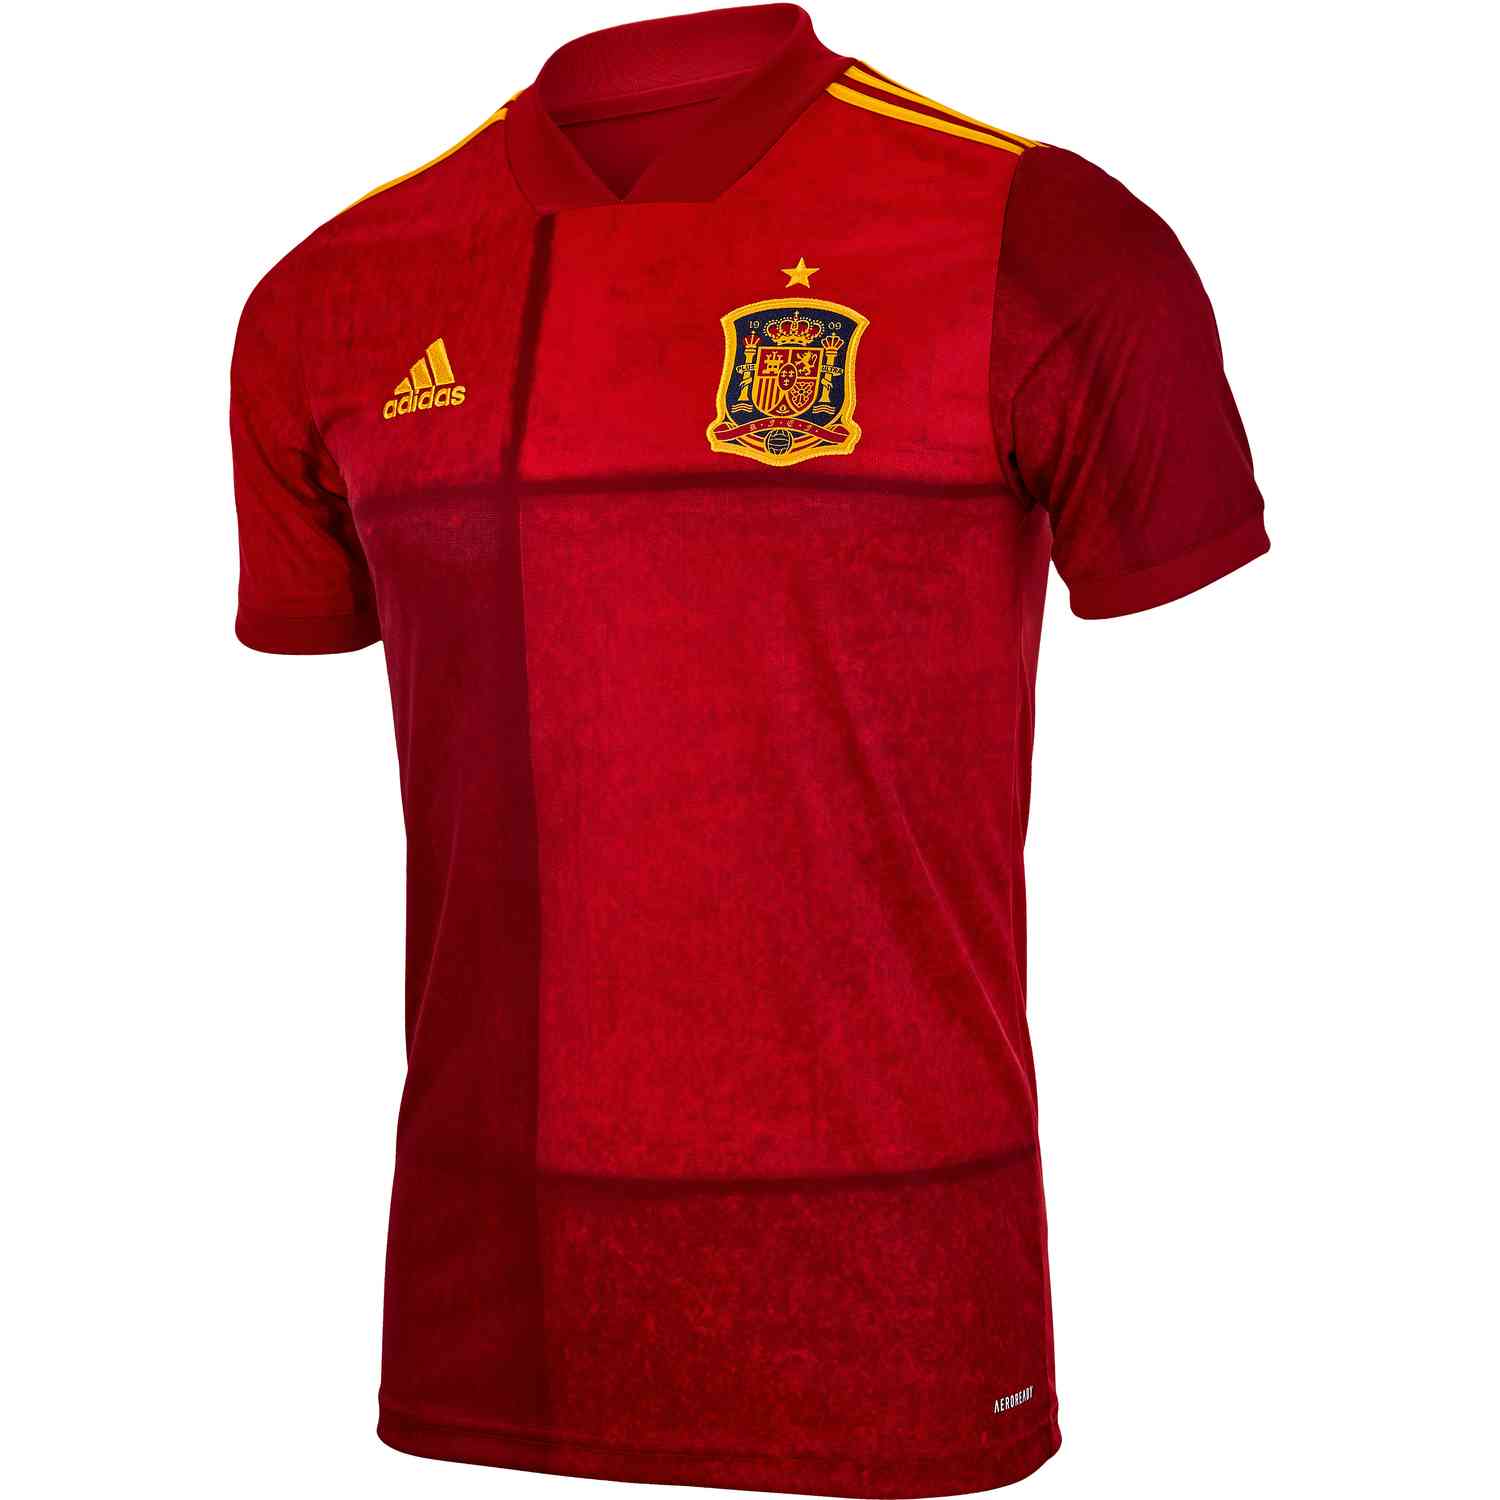 2020 Kids adidas Spain Home Jersey - SoccerPro